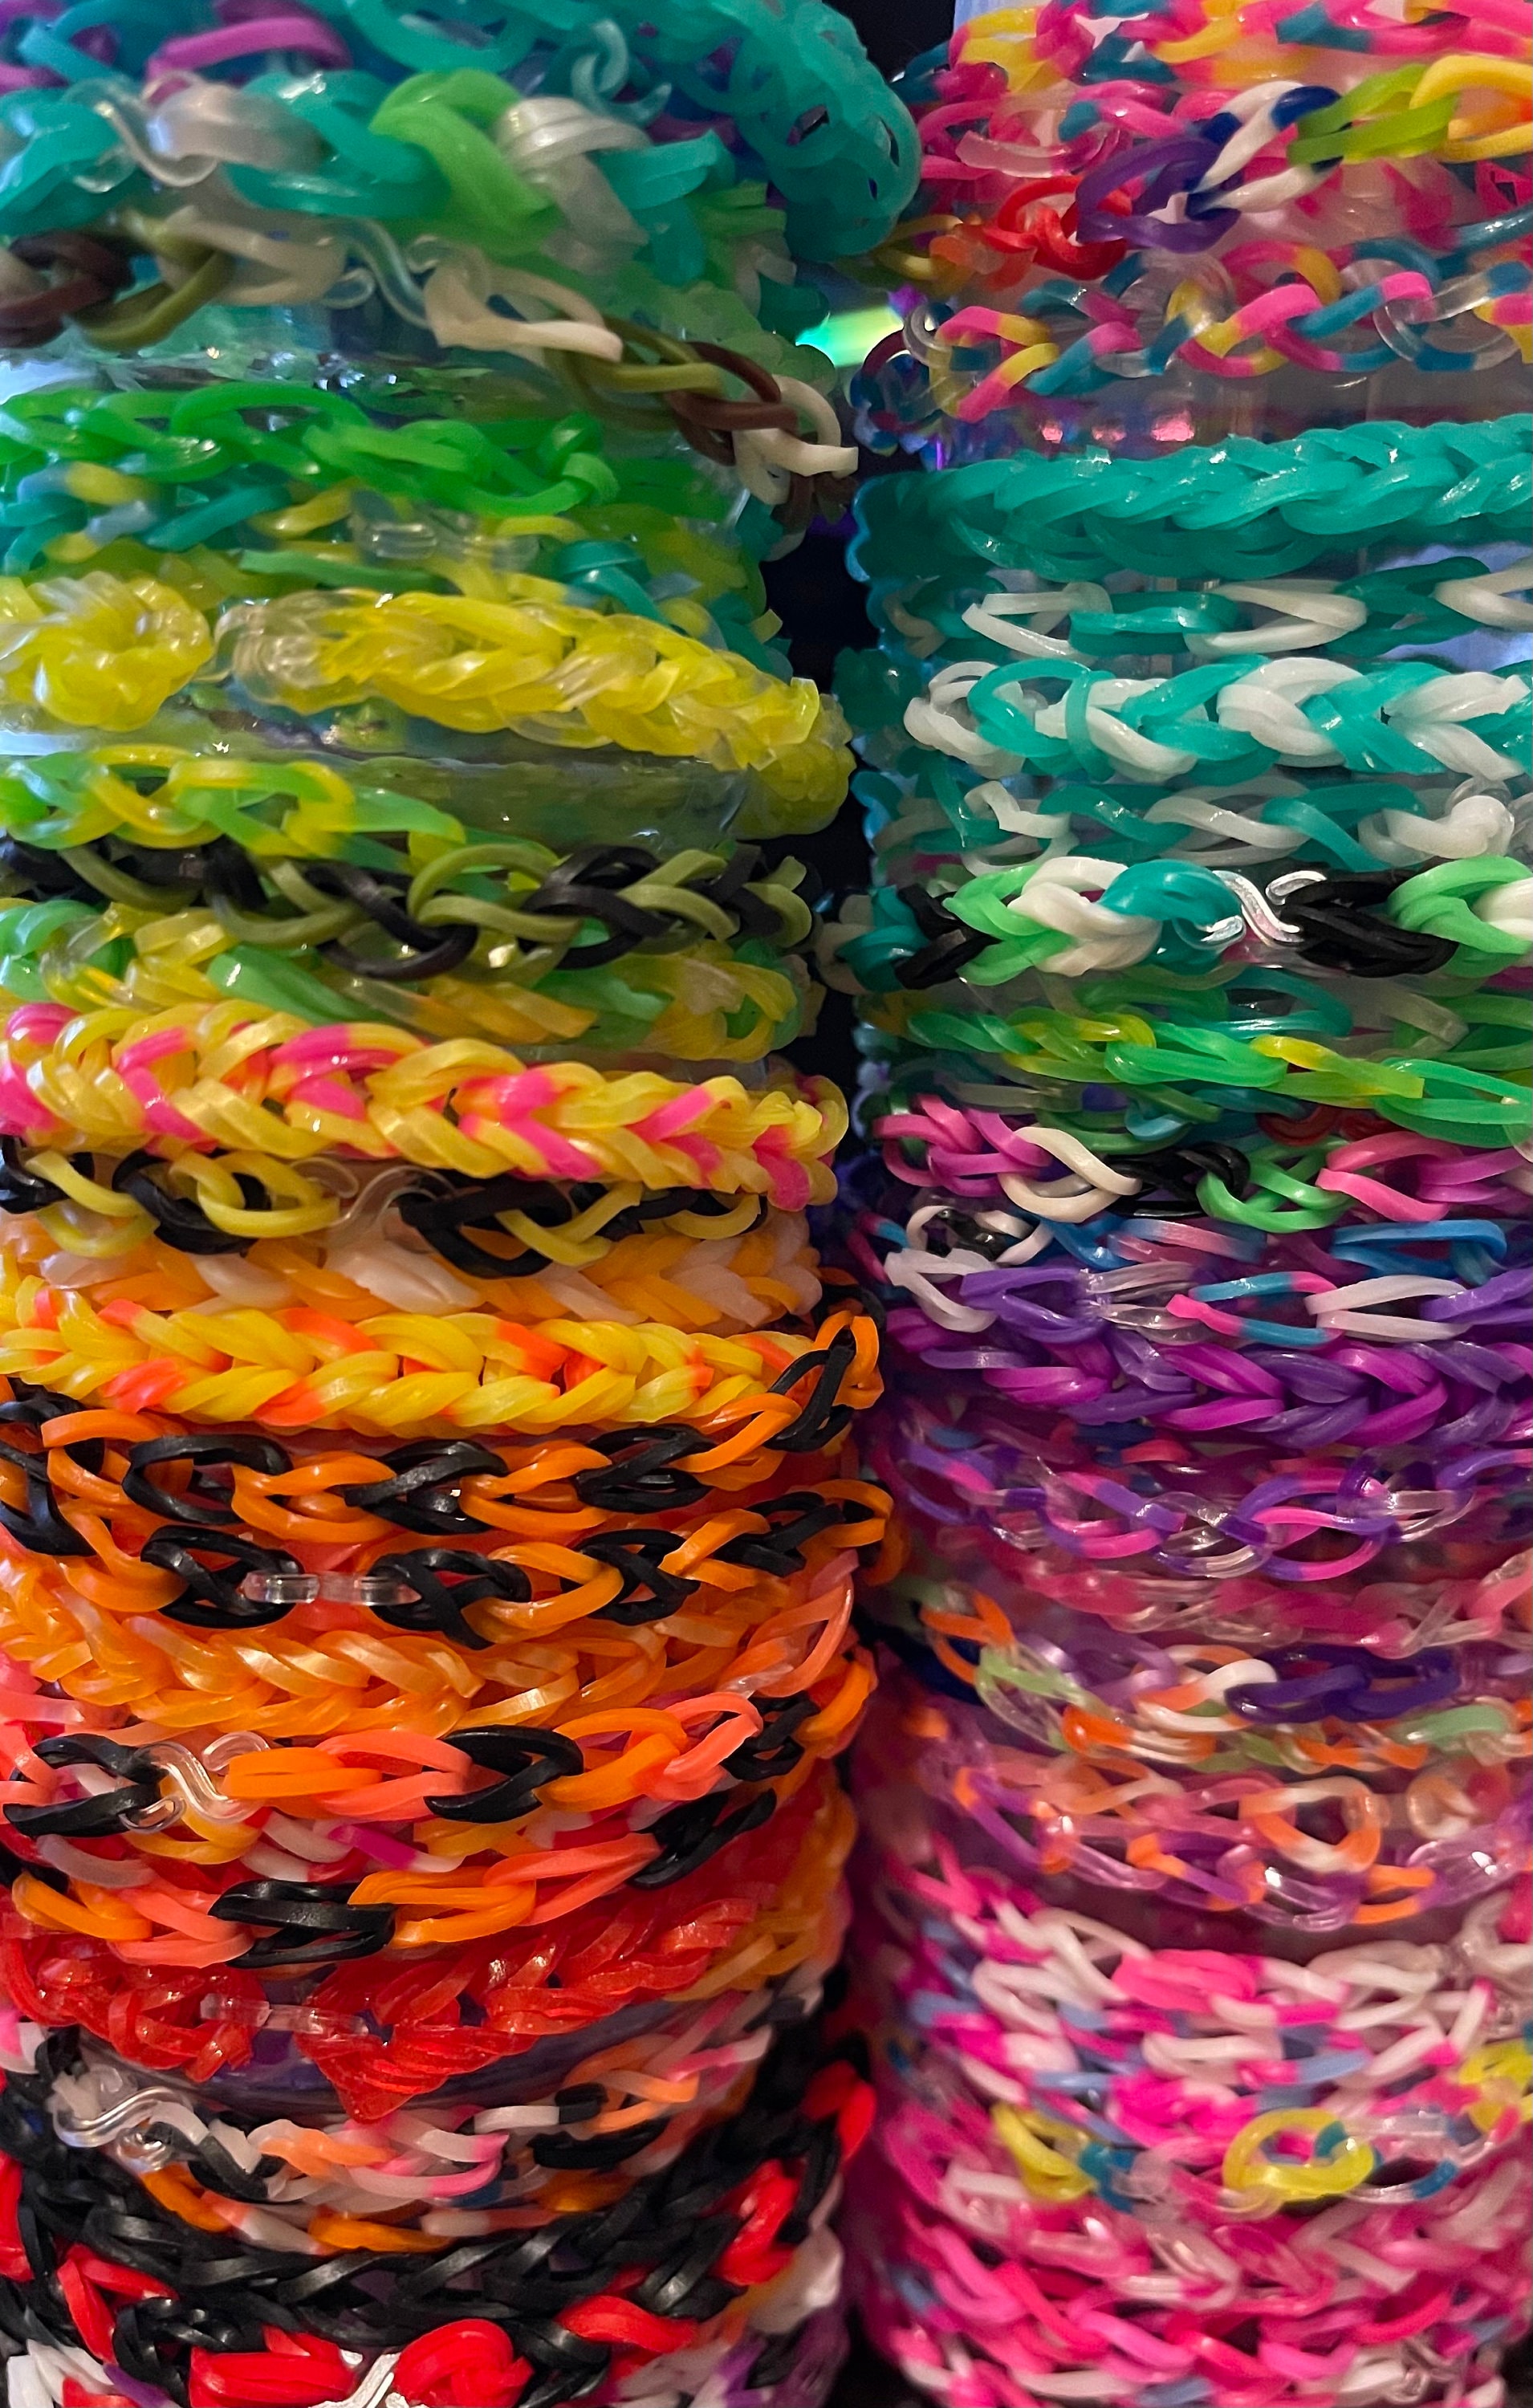 18000 Loom Bands Kit: DIY Rubber Bands Kits, 500 Clips, 40 Charms,loom  Bracelet Making Kits for Kids, DIY Rubber Band Bracelet Kit -  Norway